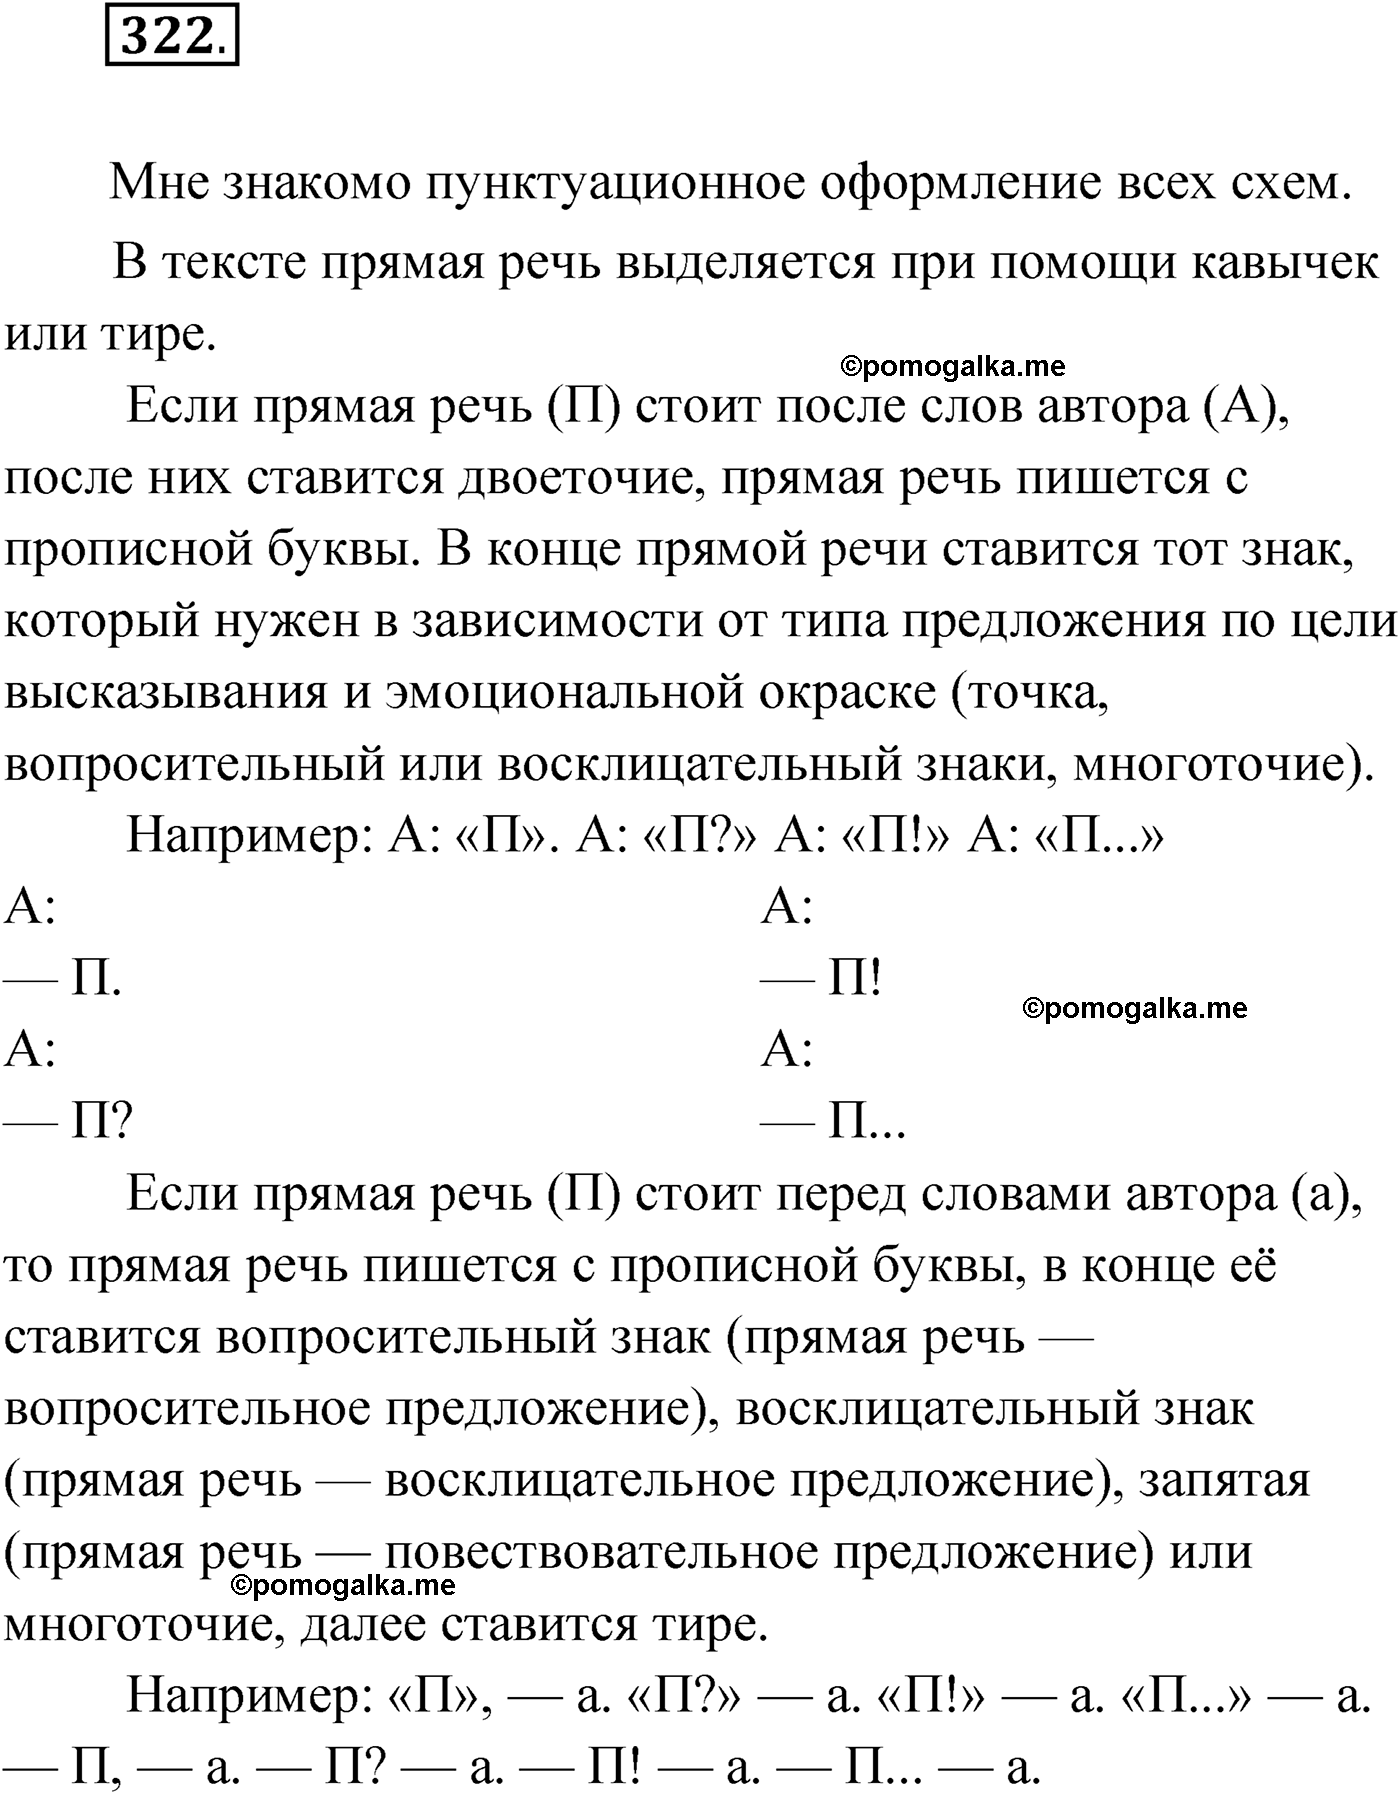 упражнение №322 русский язык 9 класс Мурина 2019 год